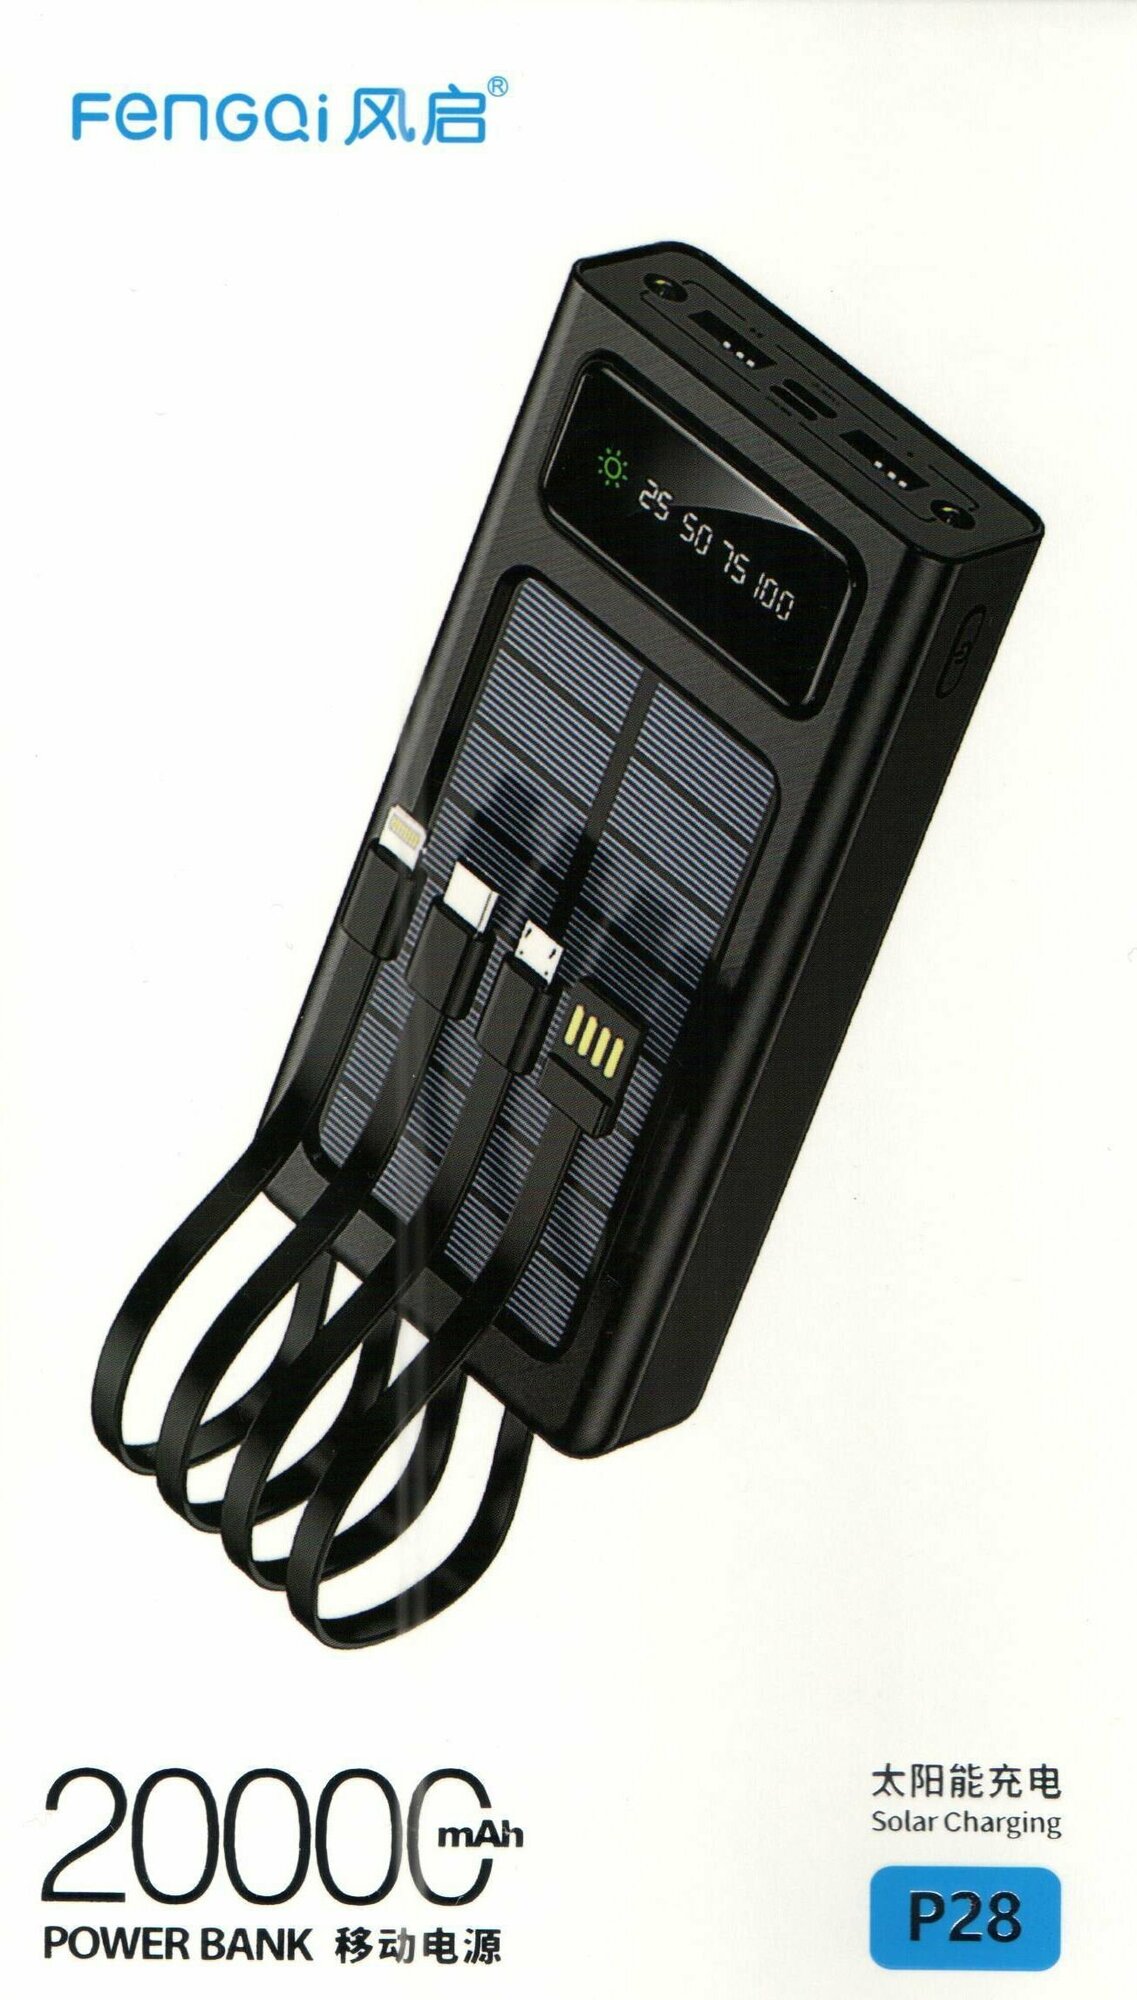 Внешний аккумулятор на солнечных батареях, FENGQi 20000 mAh, POWER BANK - P28, черный